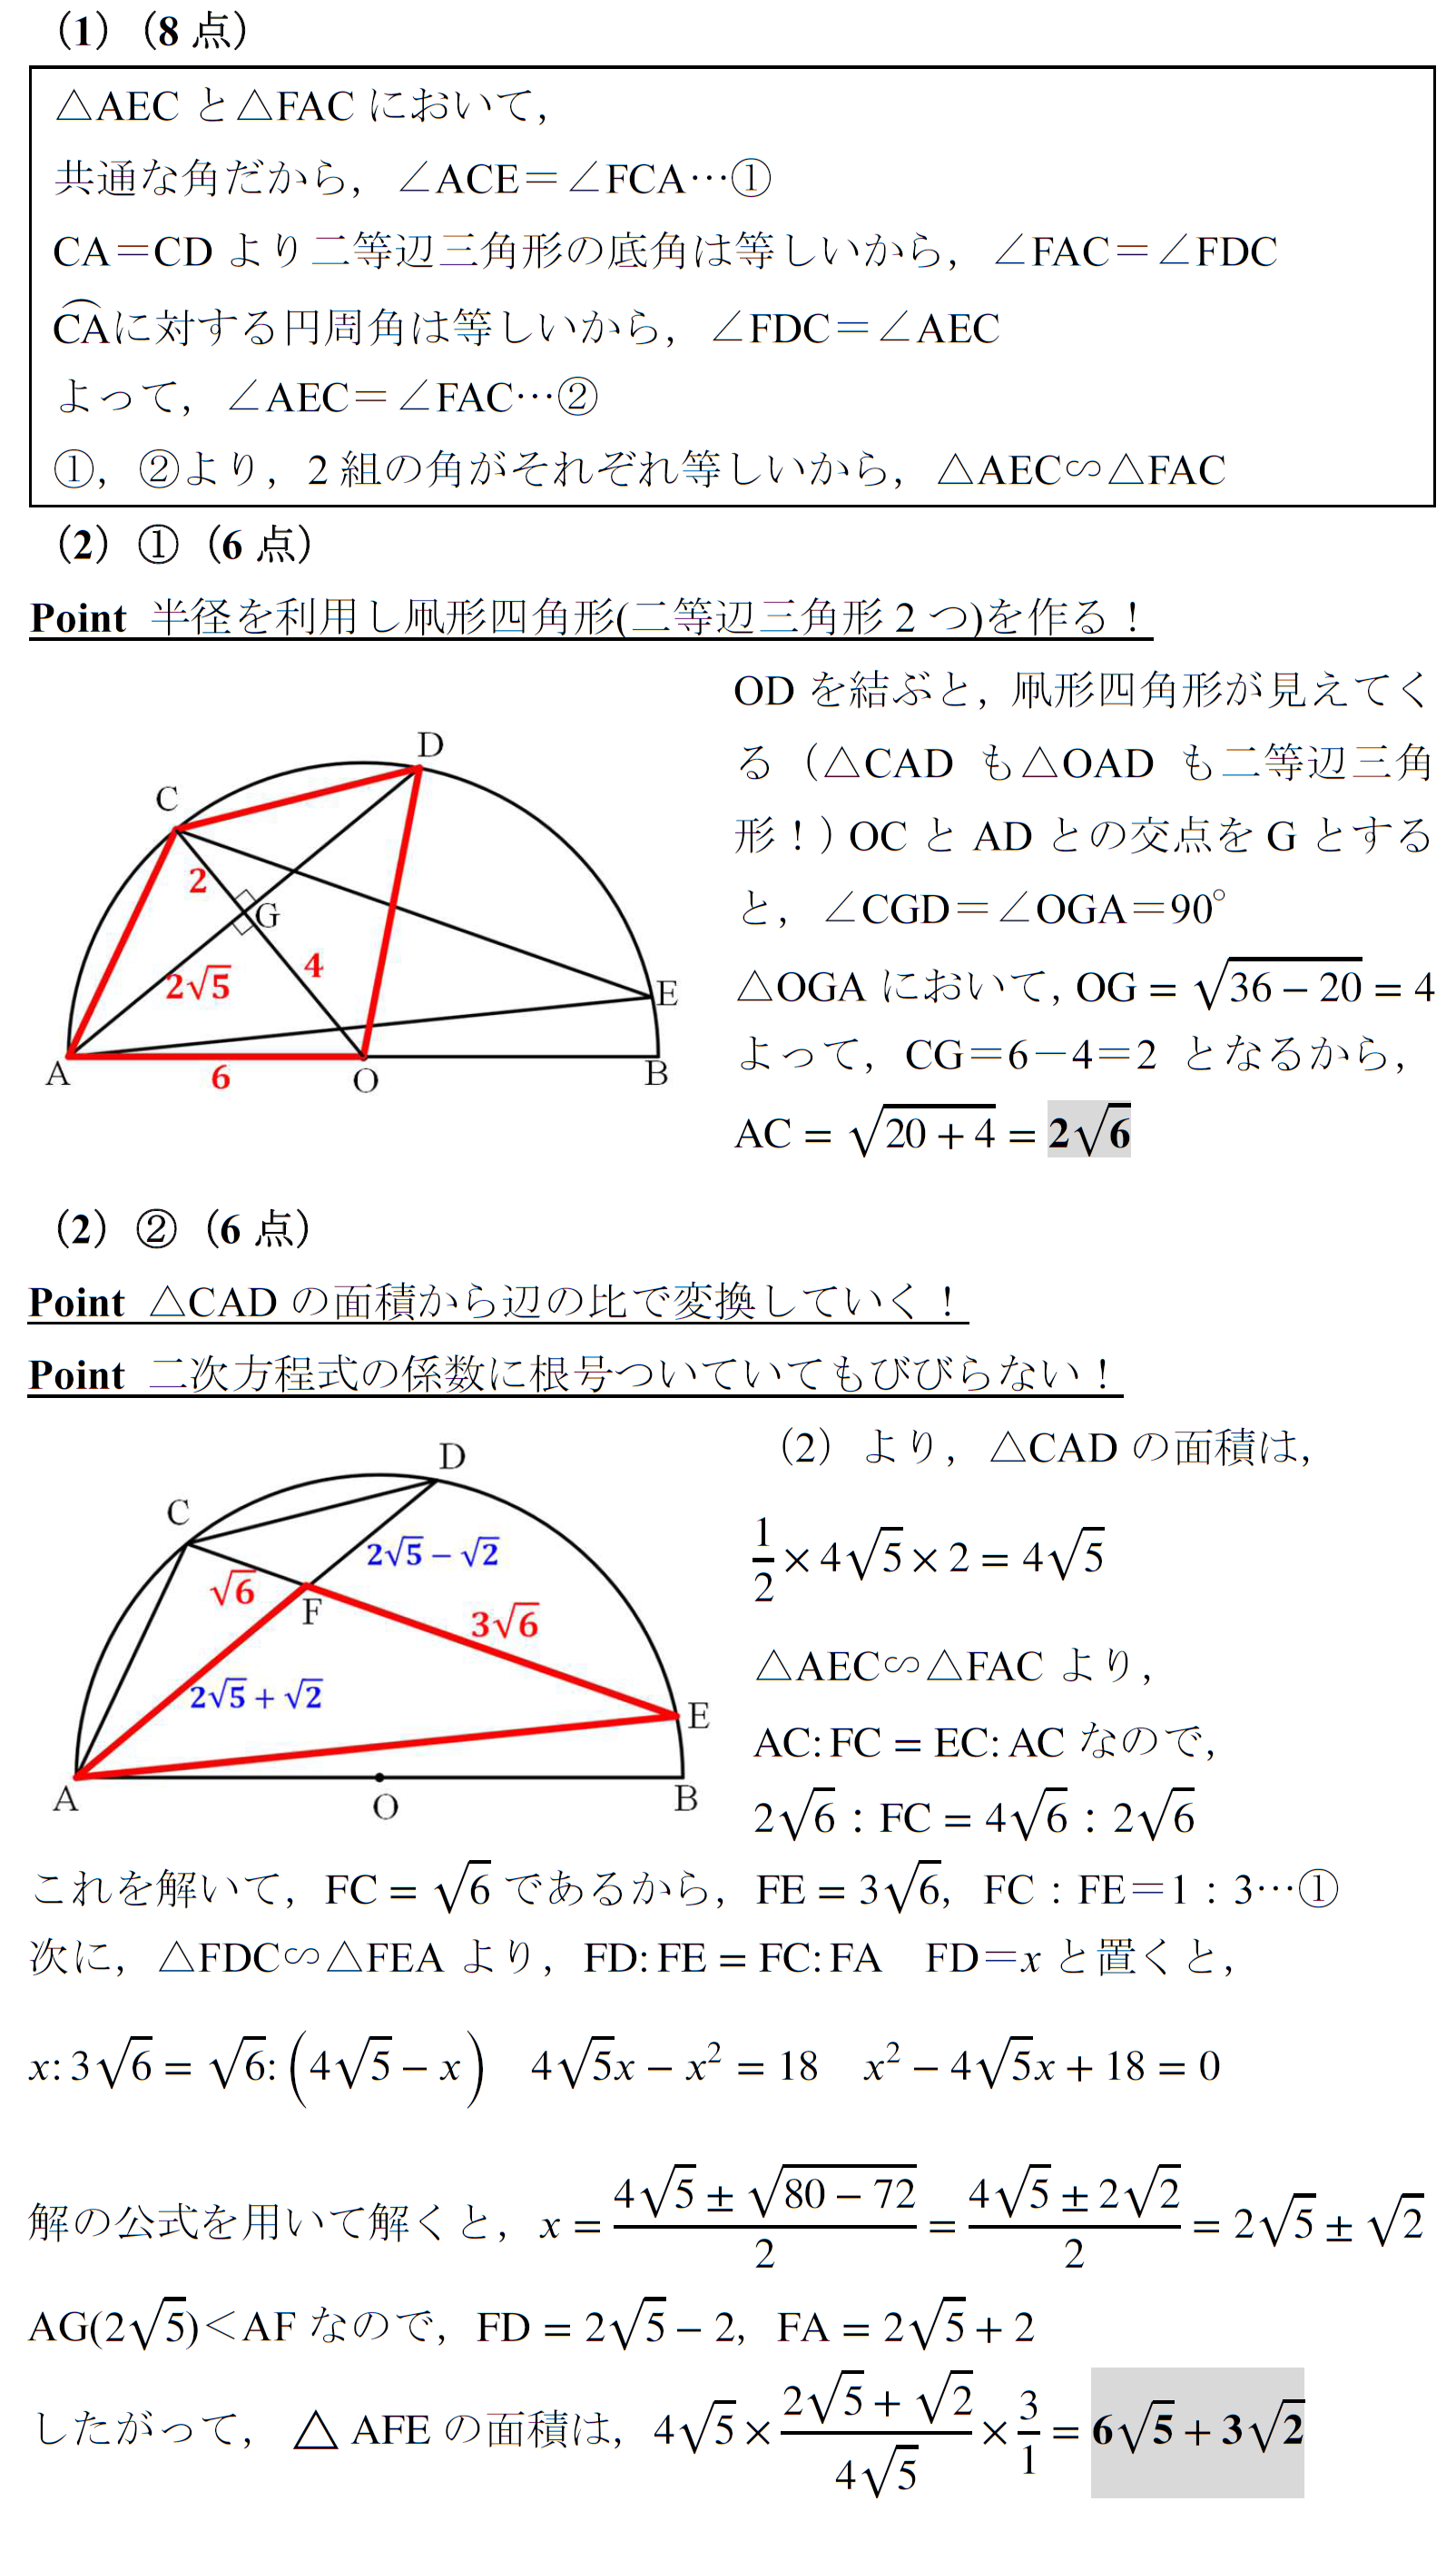 2011　桐朋高校　平面図形　円周角　三平方の定理　相似　証明　難問　良問